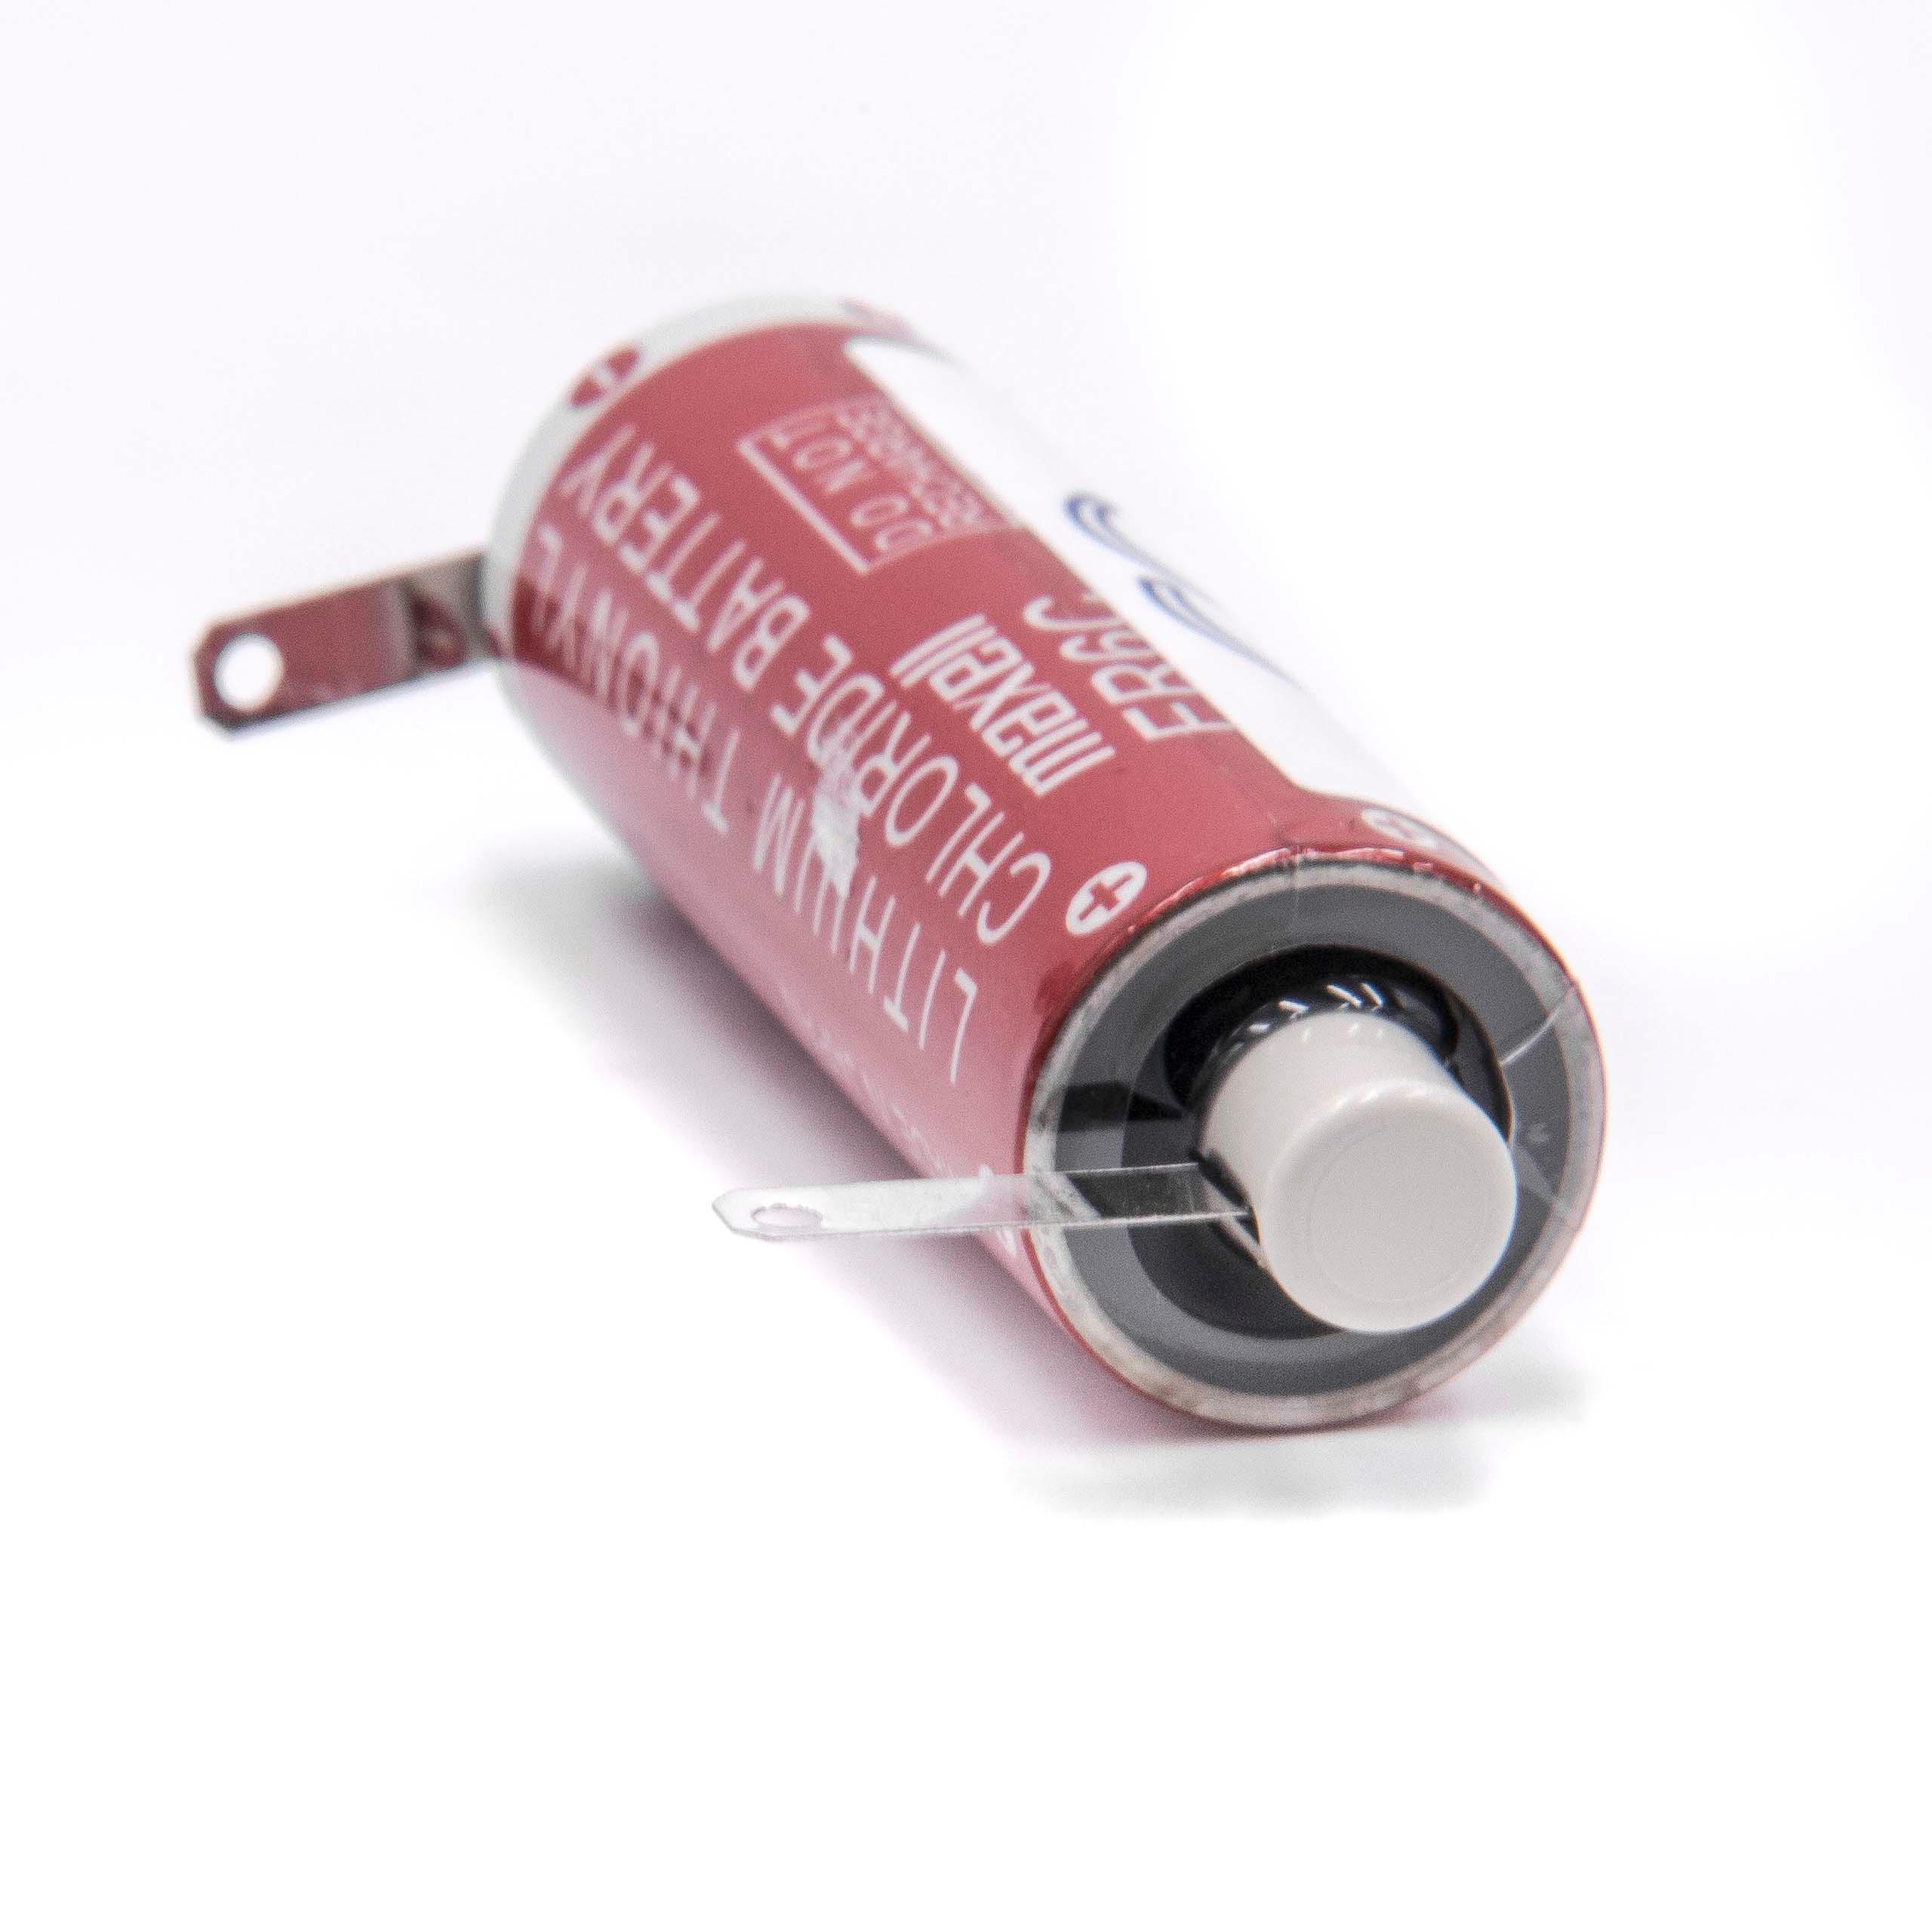 Batterie remplace Maxell ER6C pour PLC Programmable Logic Controller - 1800mAh 3,6V Li-MnO2